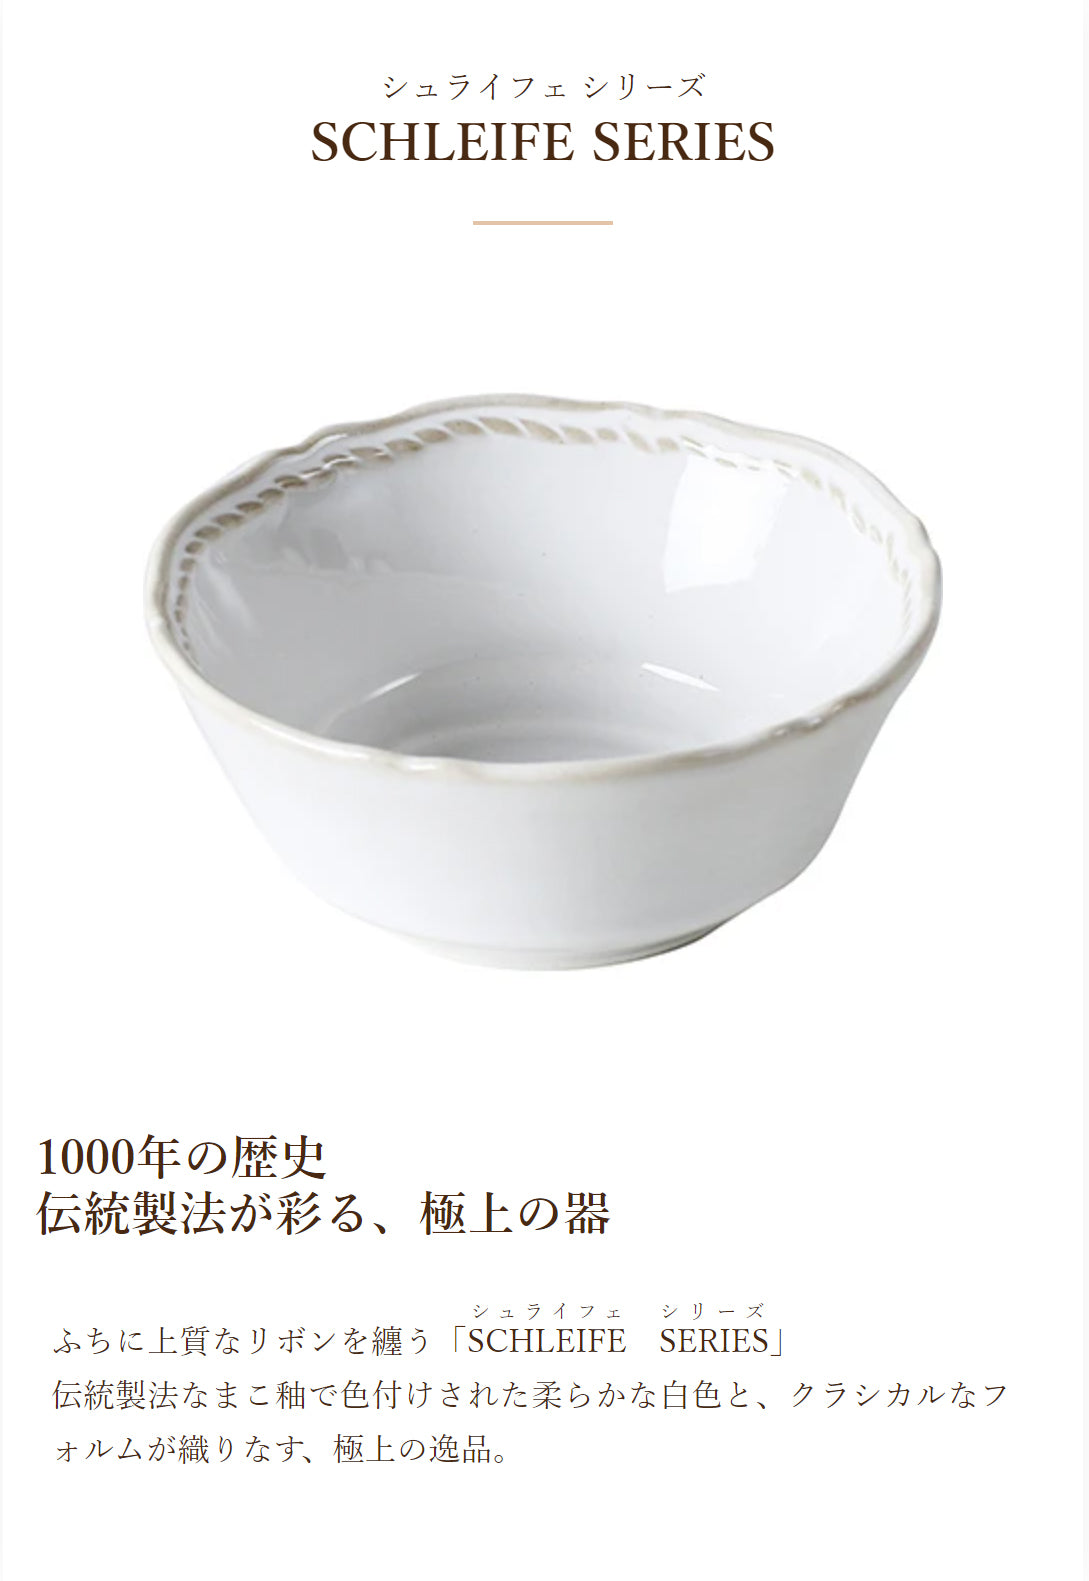 おしゃれな白い小鉢。北欧風の食器をお探しなら┃MAU SAC